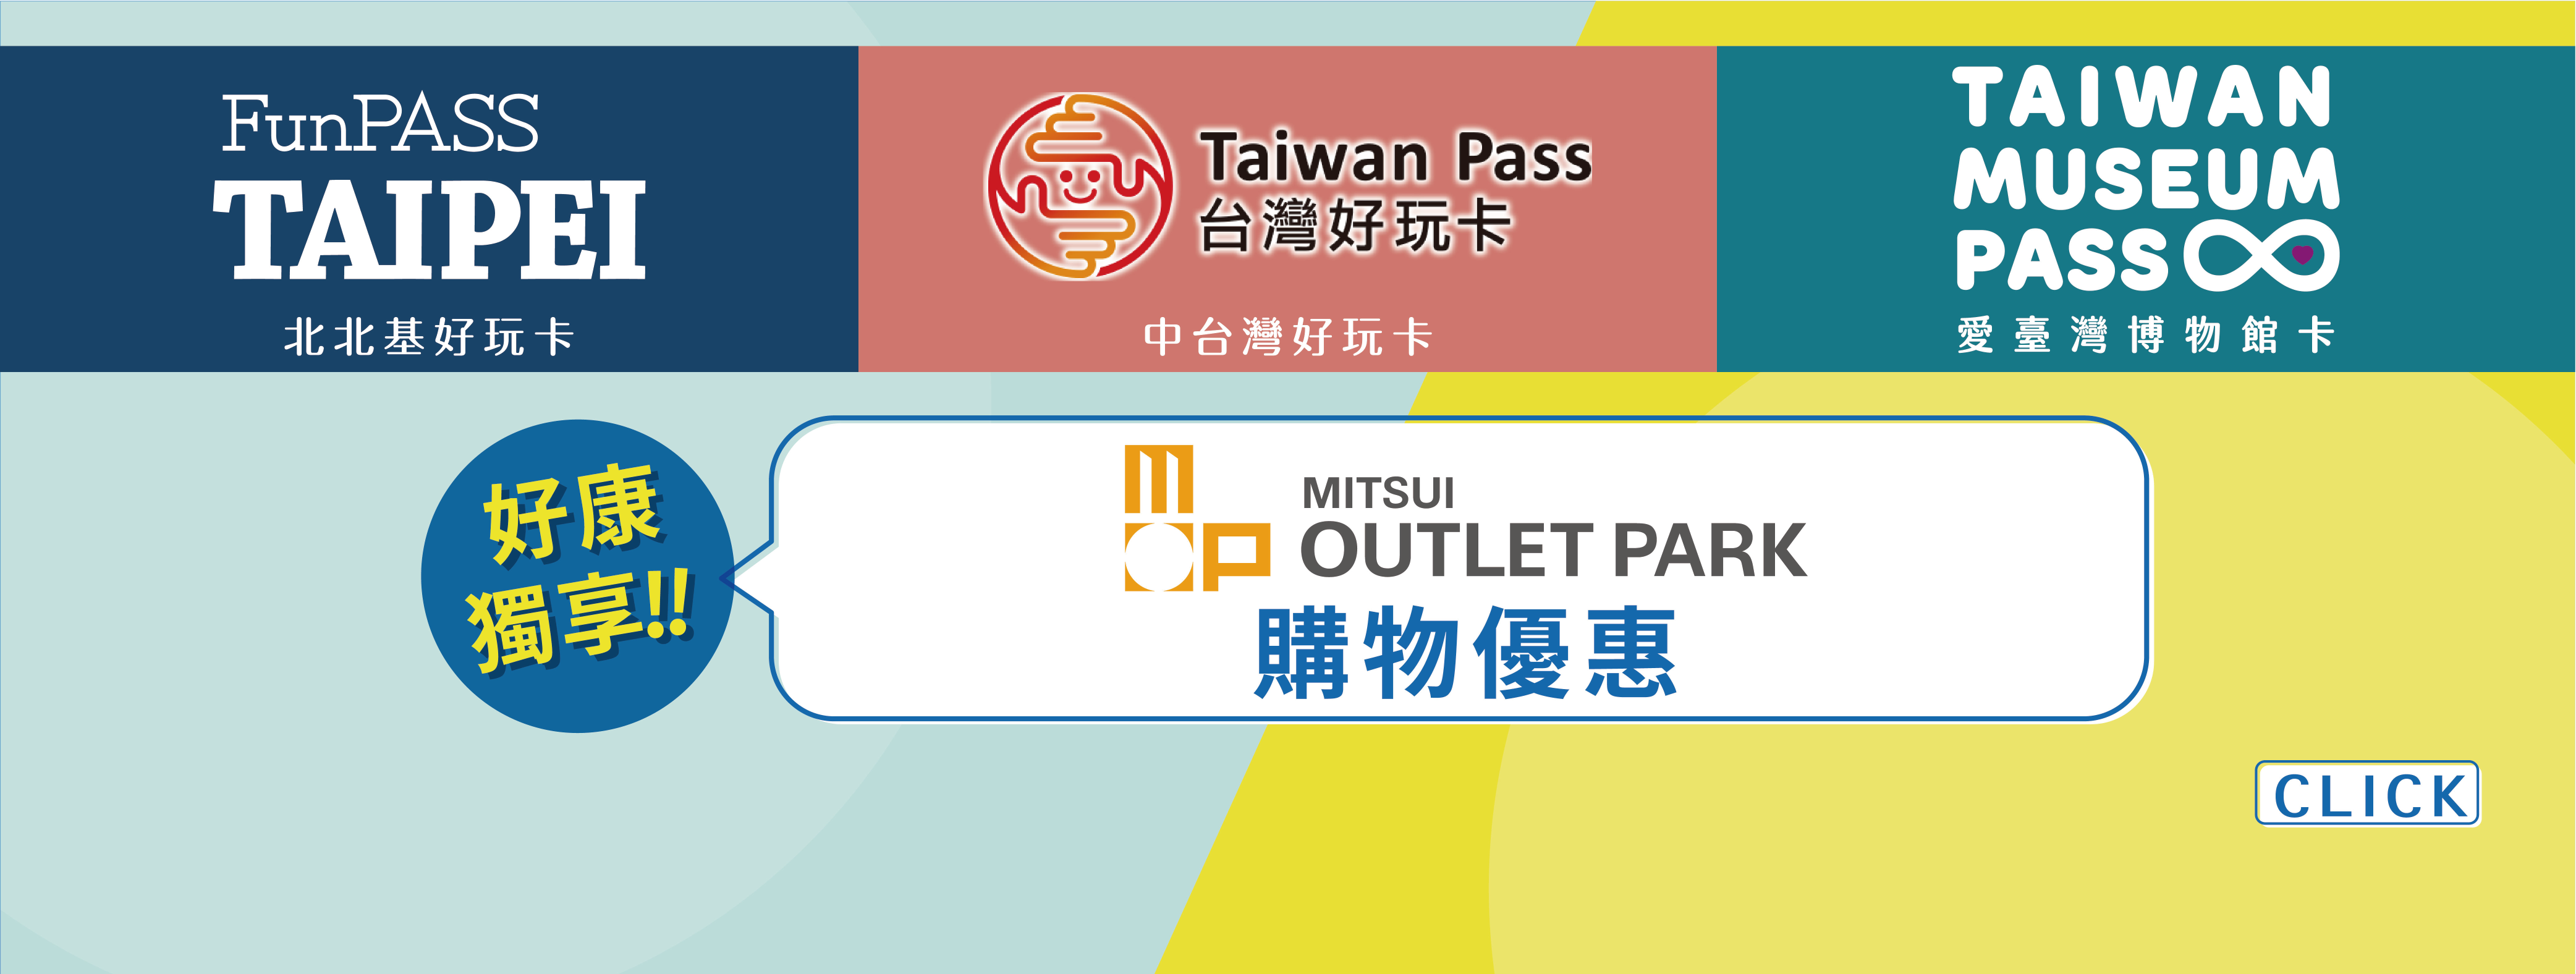 Taiwan Pass 聯合優惠活動